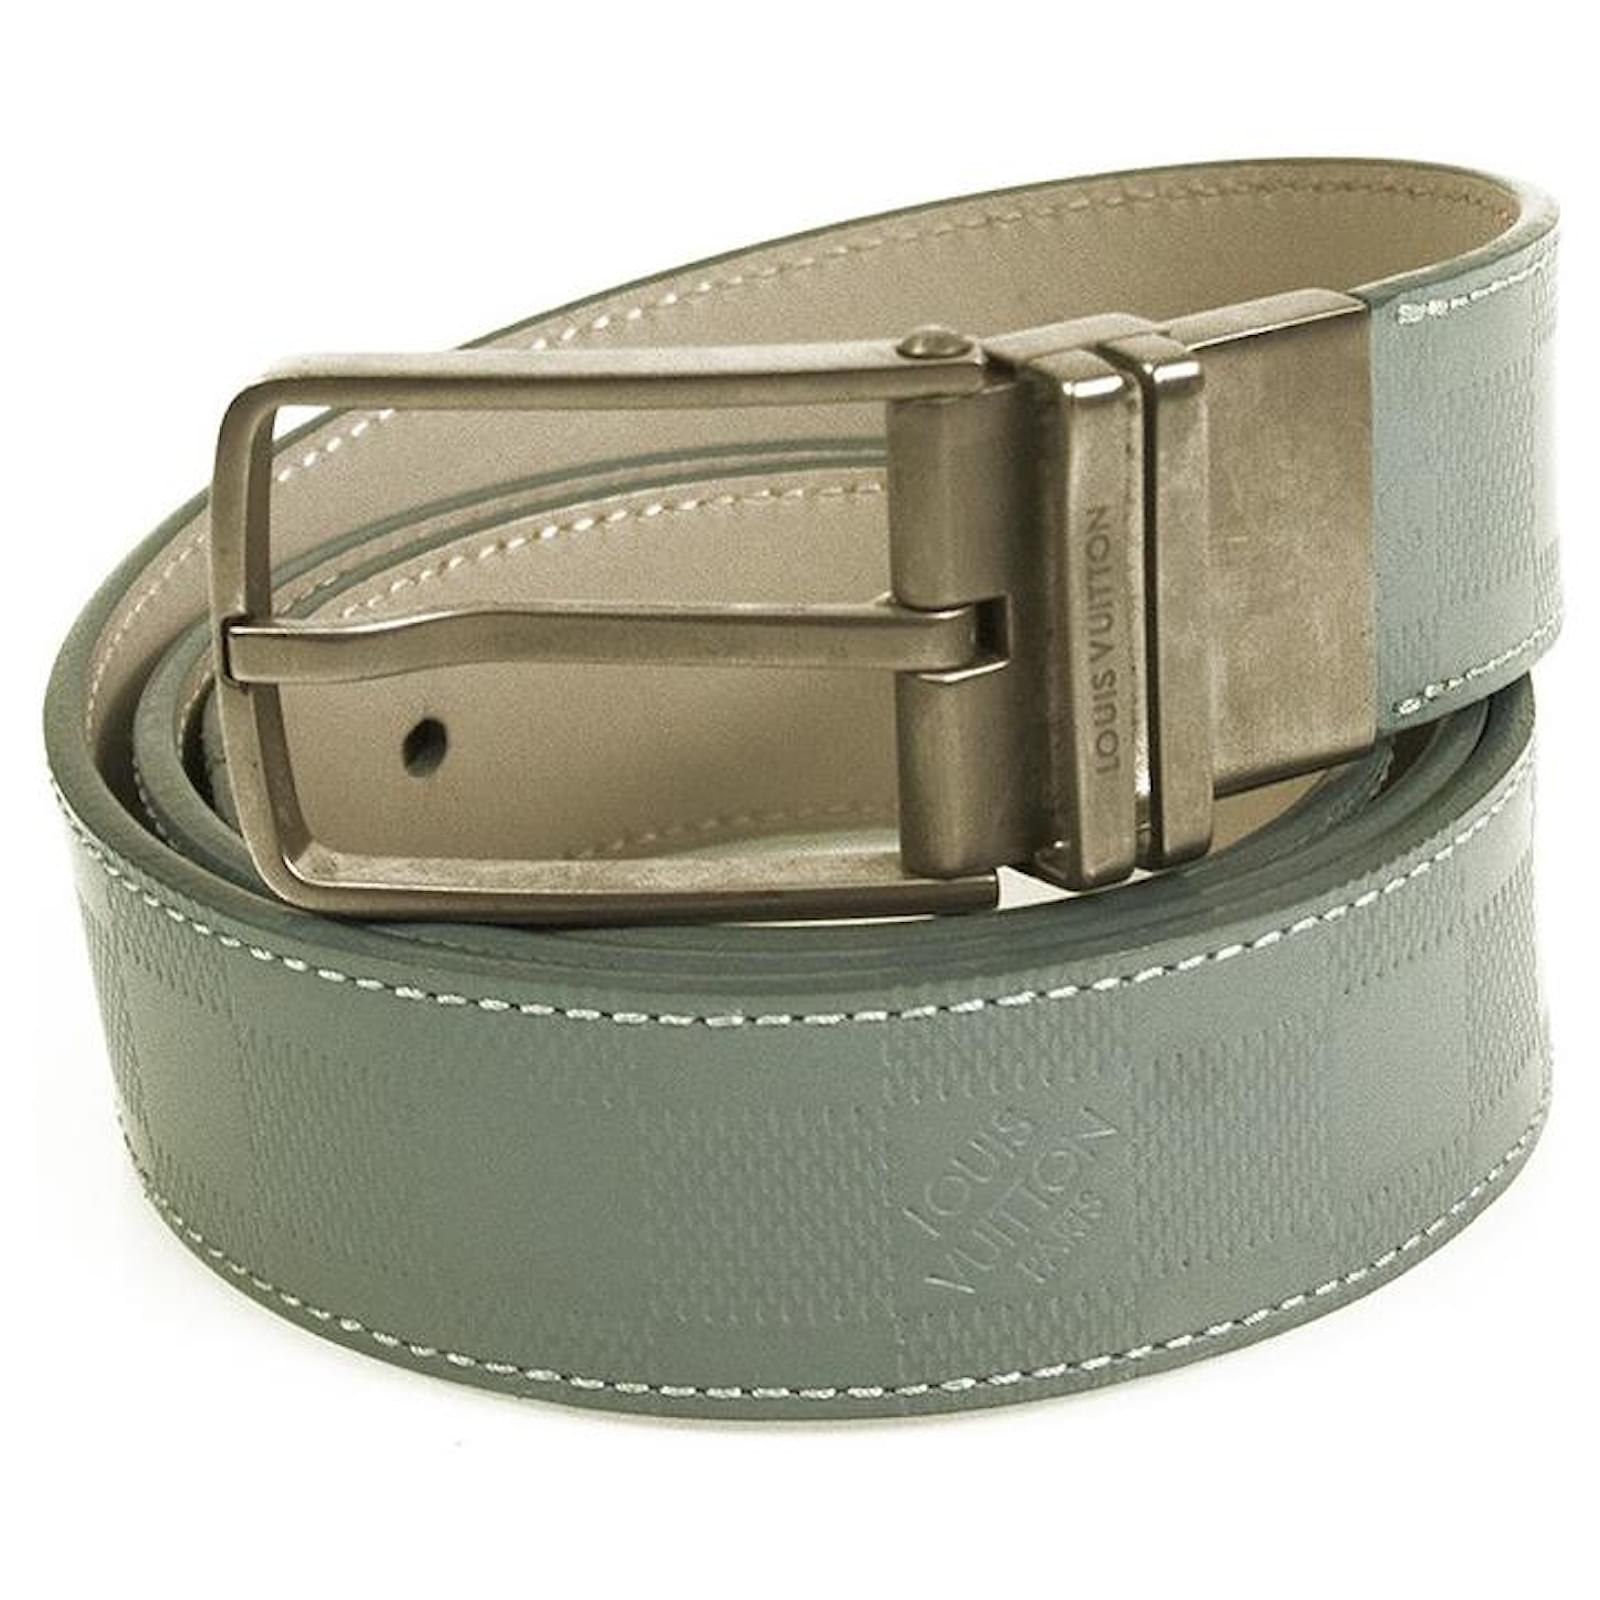 Cinturones Louis vuitton Marrón talla 95 cm de en Cuero - 36638659